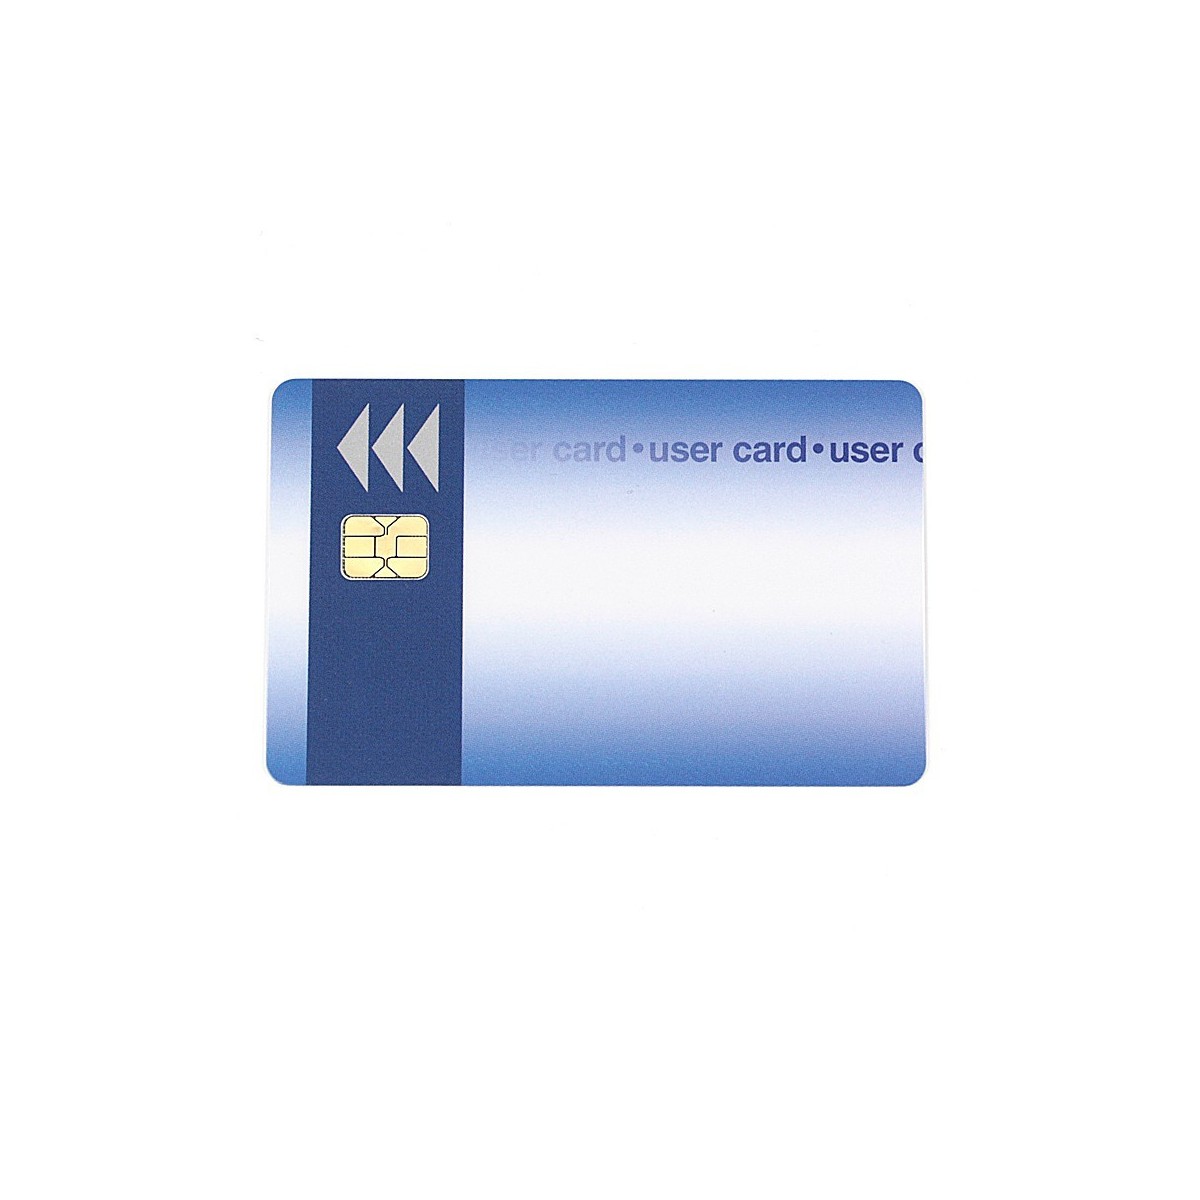 I2C-Smart Card 2 kByte (16k-Bit)